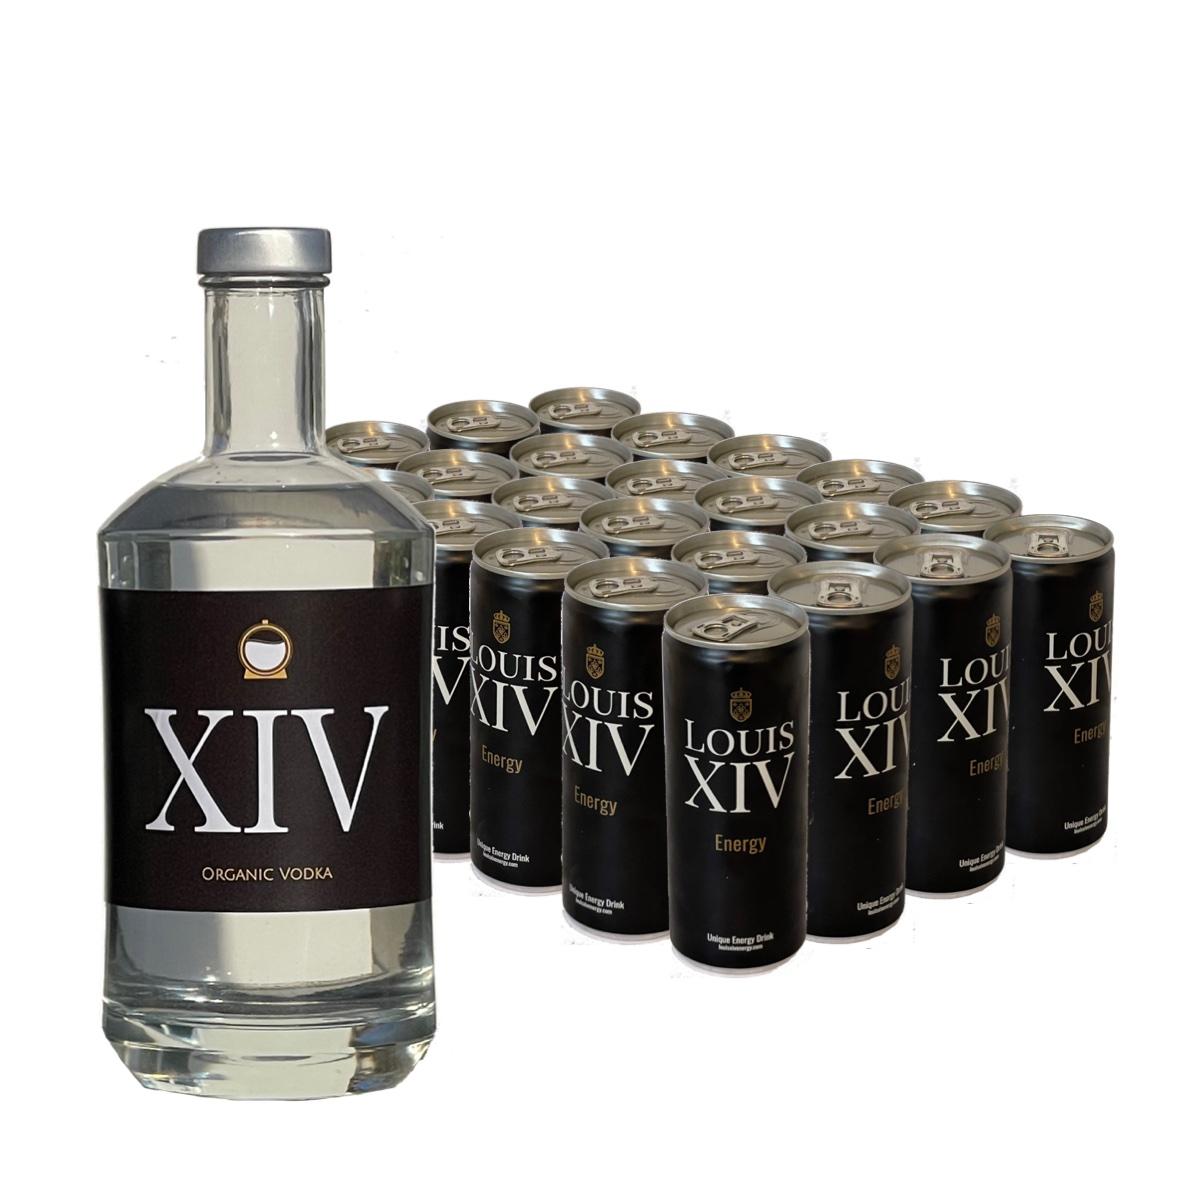 XIV Vodka plus 24